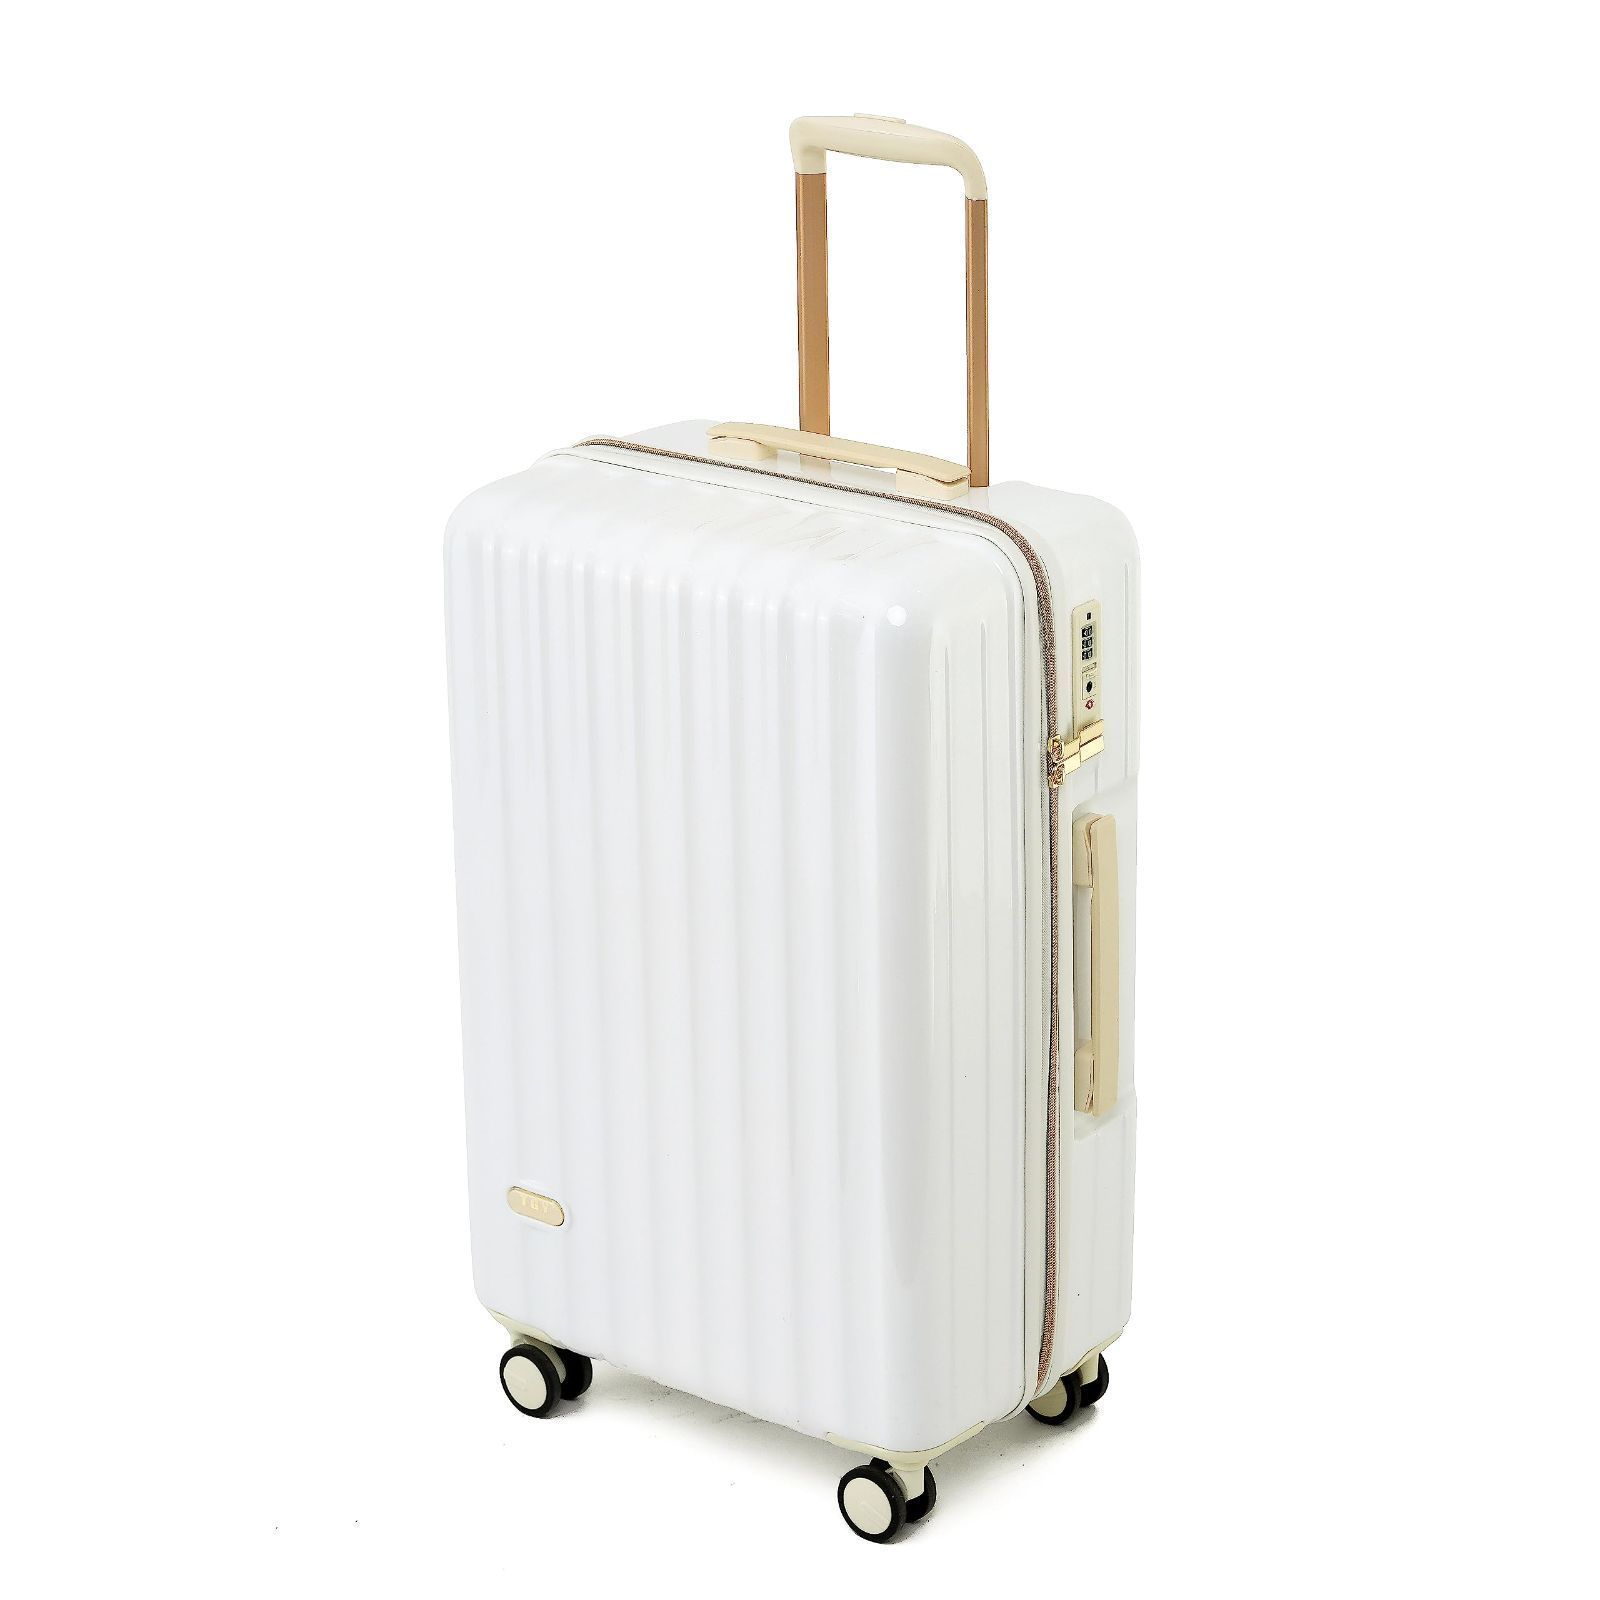 スーツケース mサイズ 35泊以上 軽量 かわいい キャリーケース おしゃれ